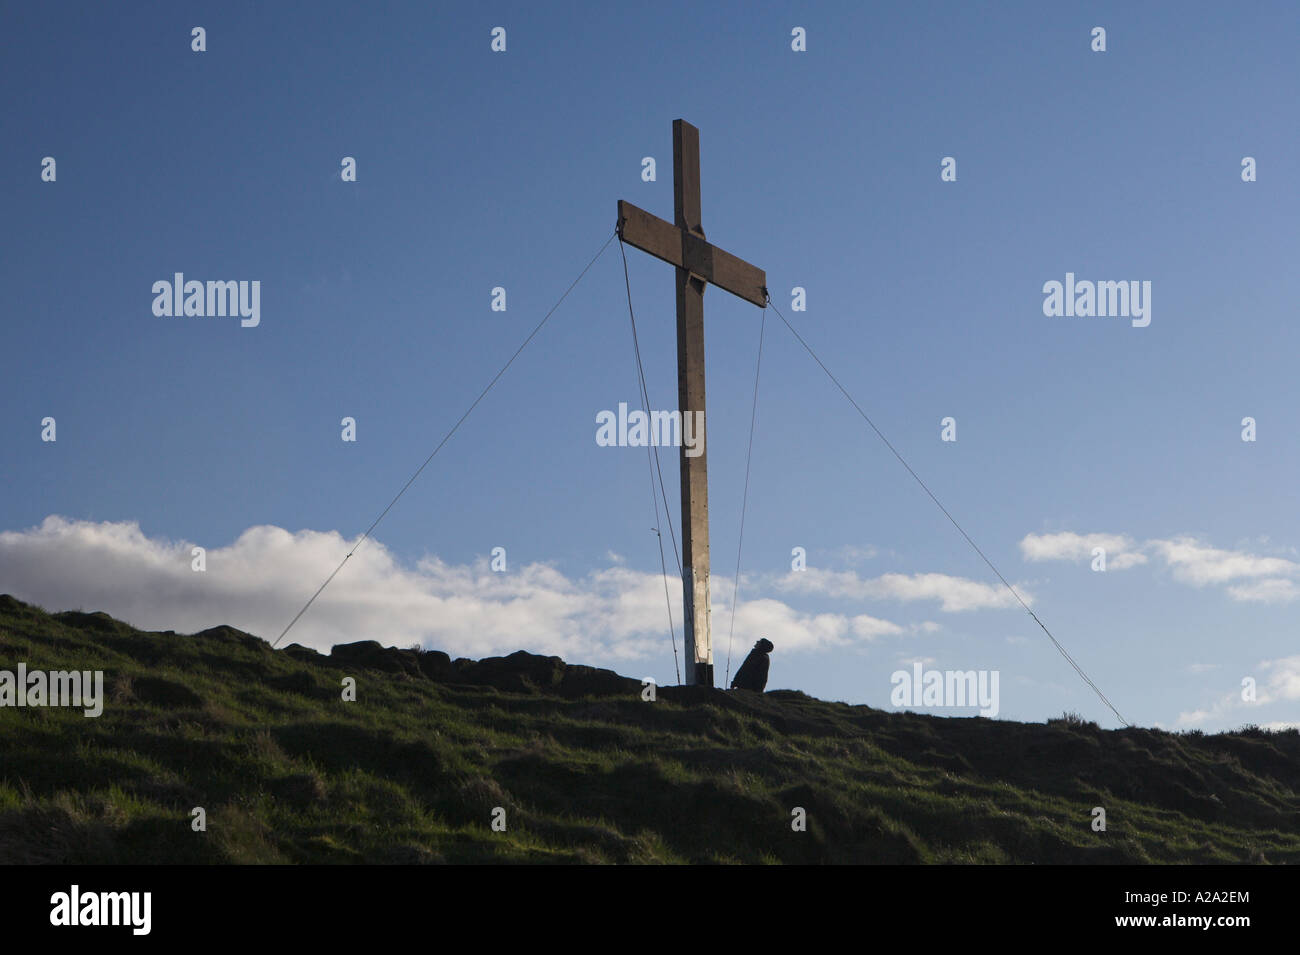 Homme debout au pied d'une grande croix en bois érigée en hauteur sur une colline rurale à Eastertime et dans un ciel bleu profond - Otley Chevin, Yorkshire, Angleterre, Royaume-Uni. Banque D'Images